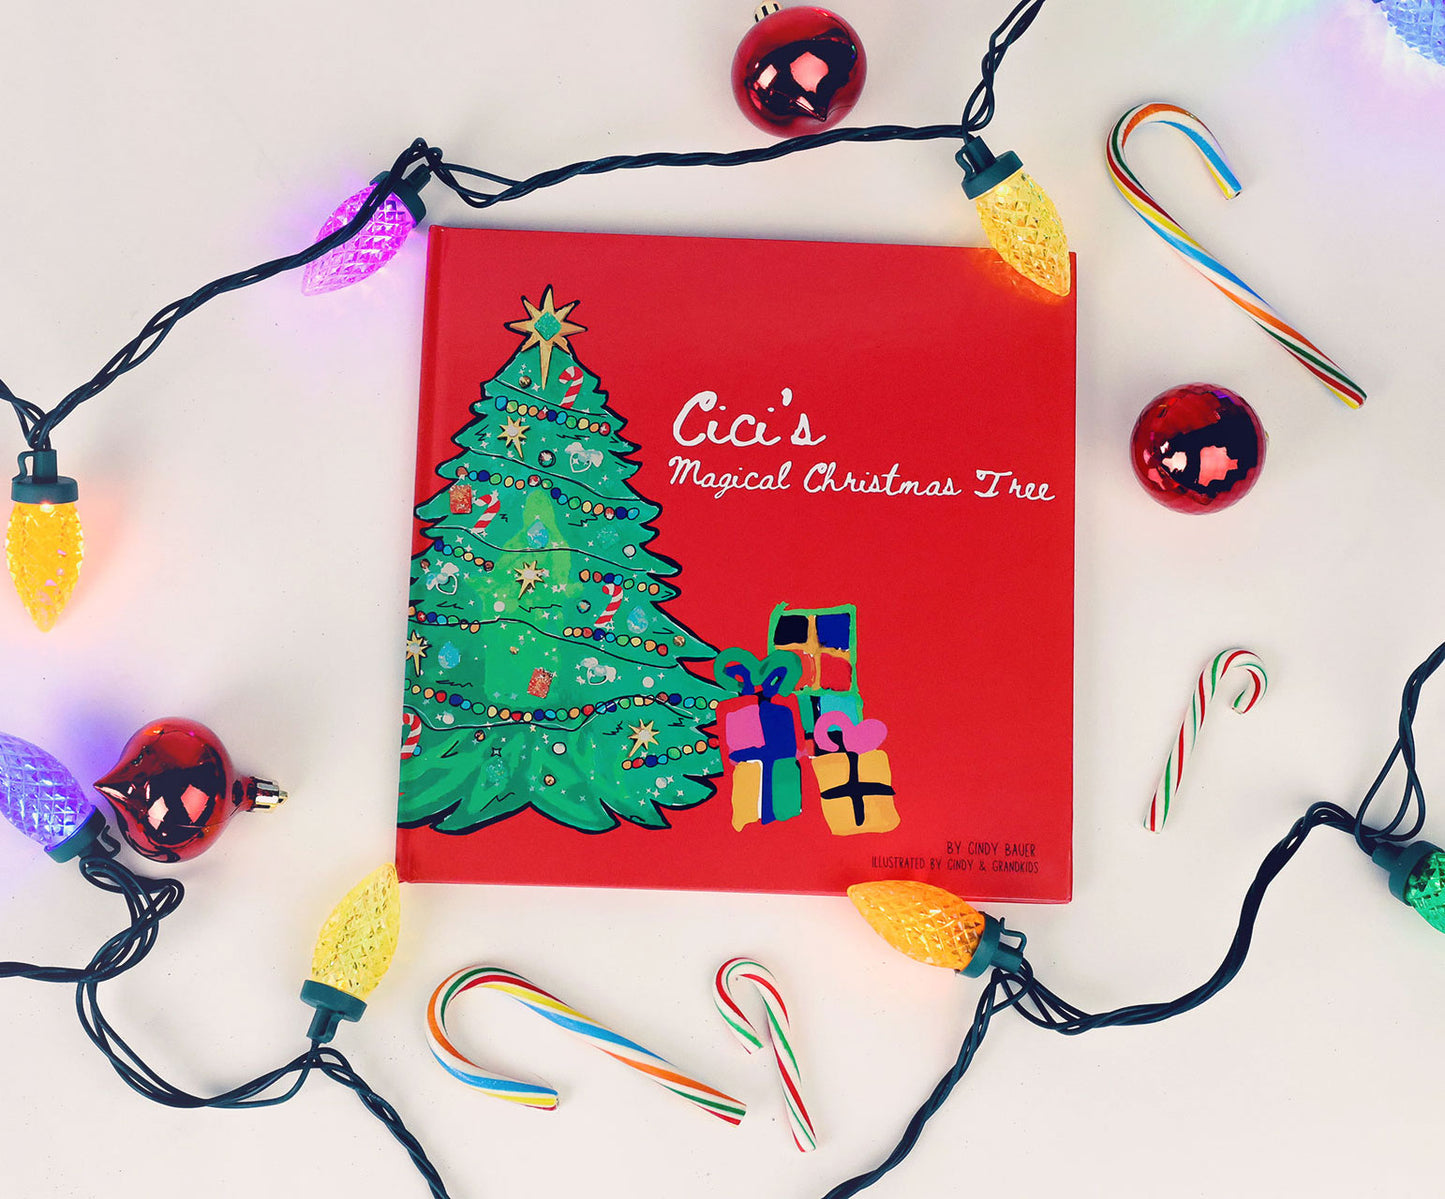 Cici’s Magical Christmas Tree